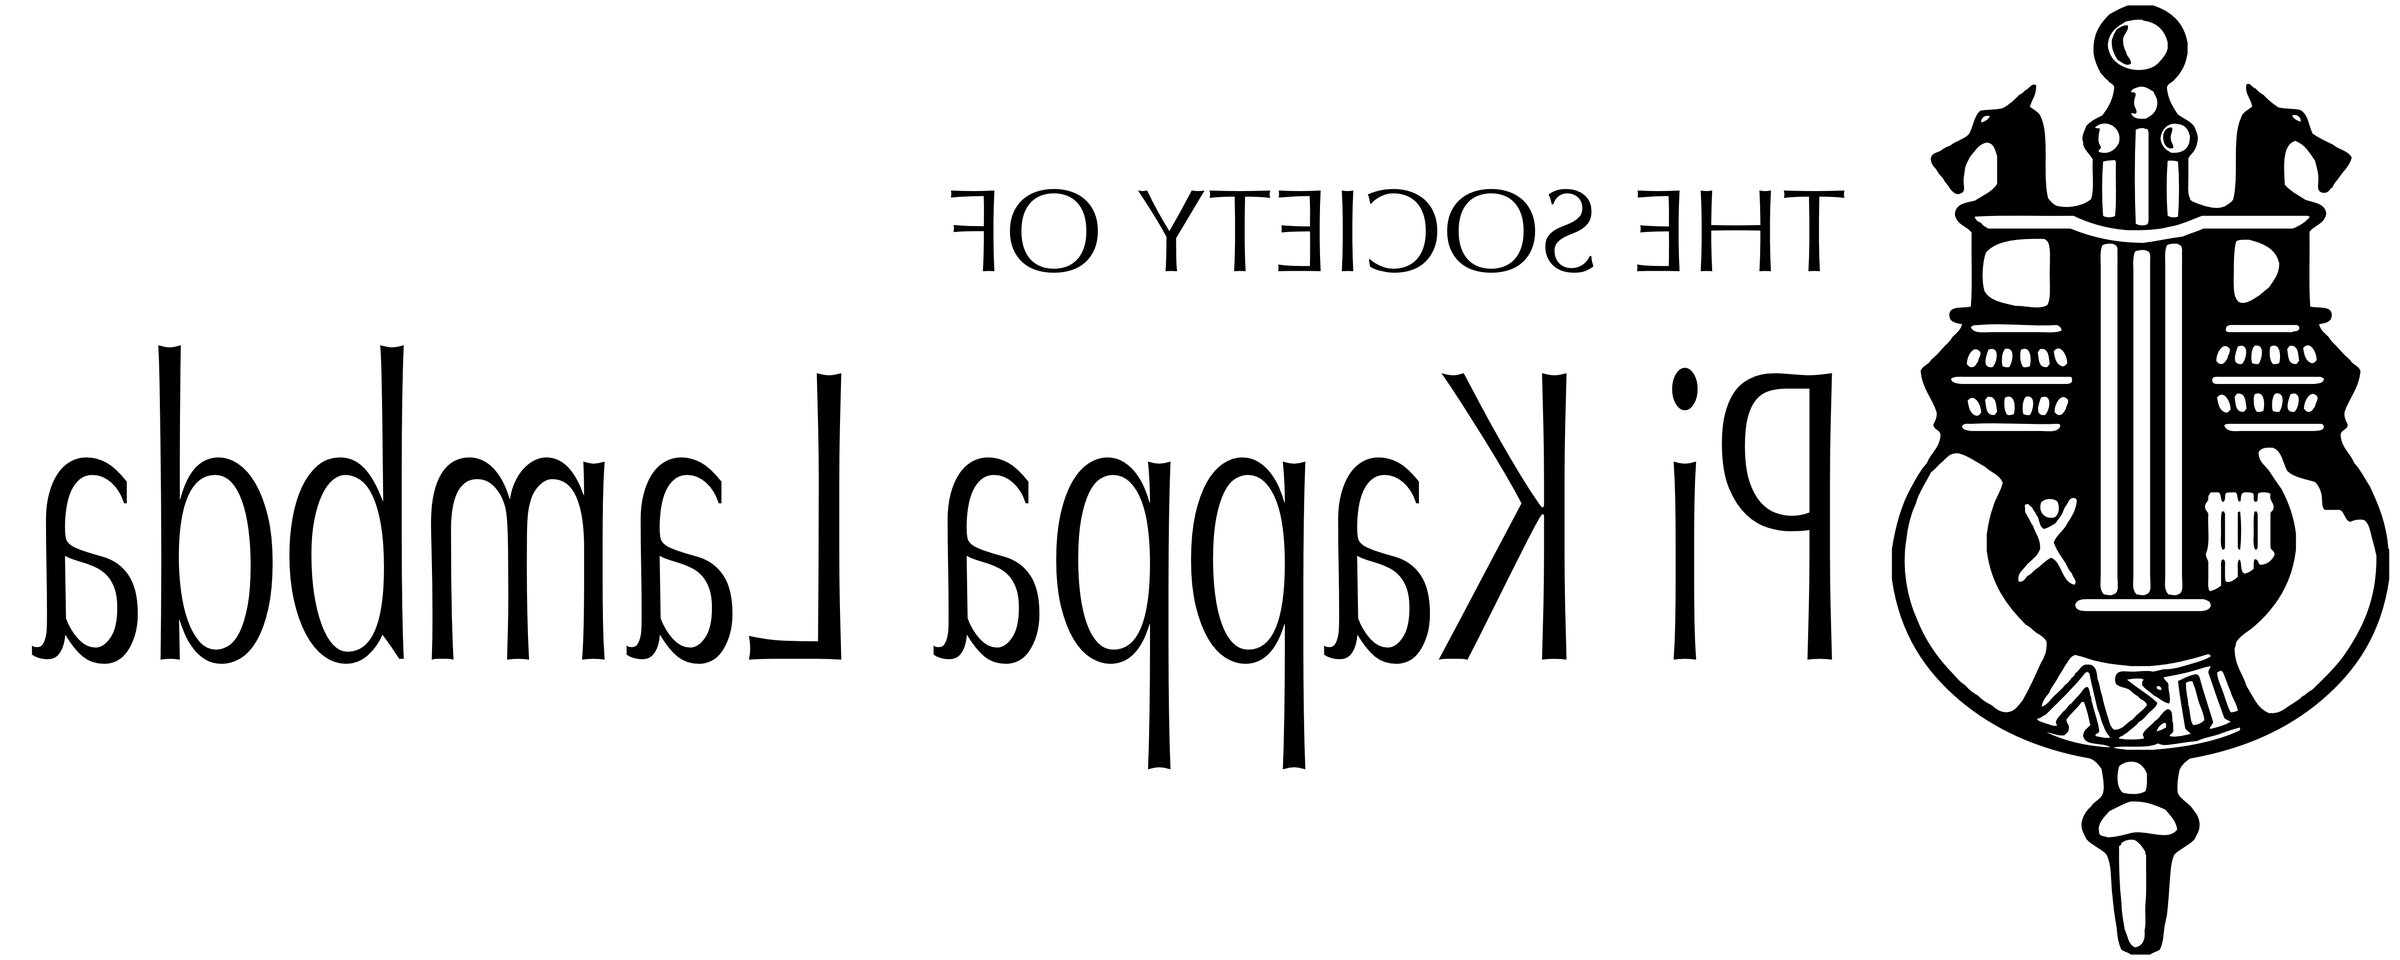 黑色印刷“的 Society of Pi Kappa Lambda”和Crest在白色和灰色格子板的背景